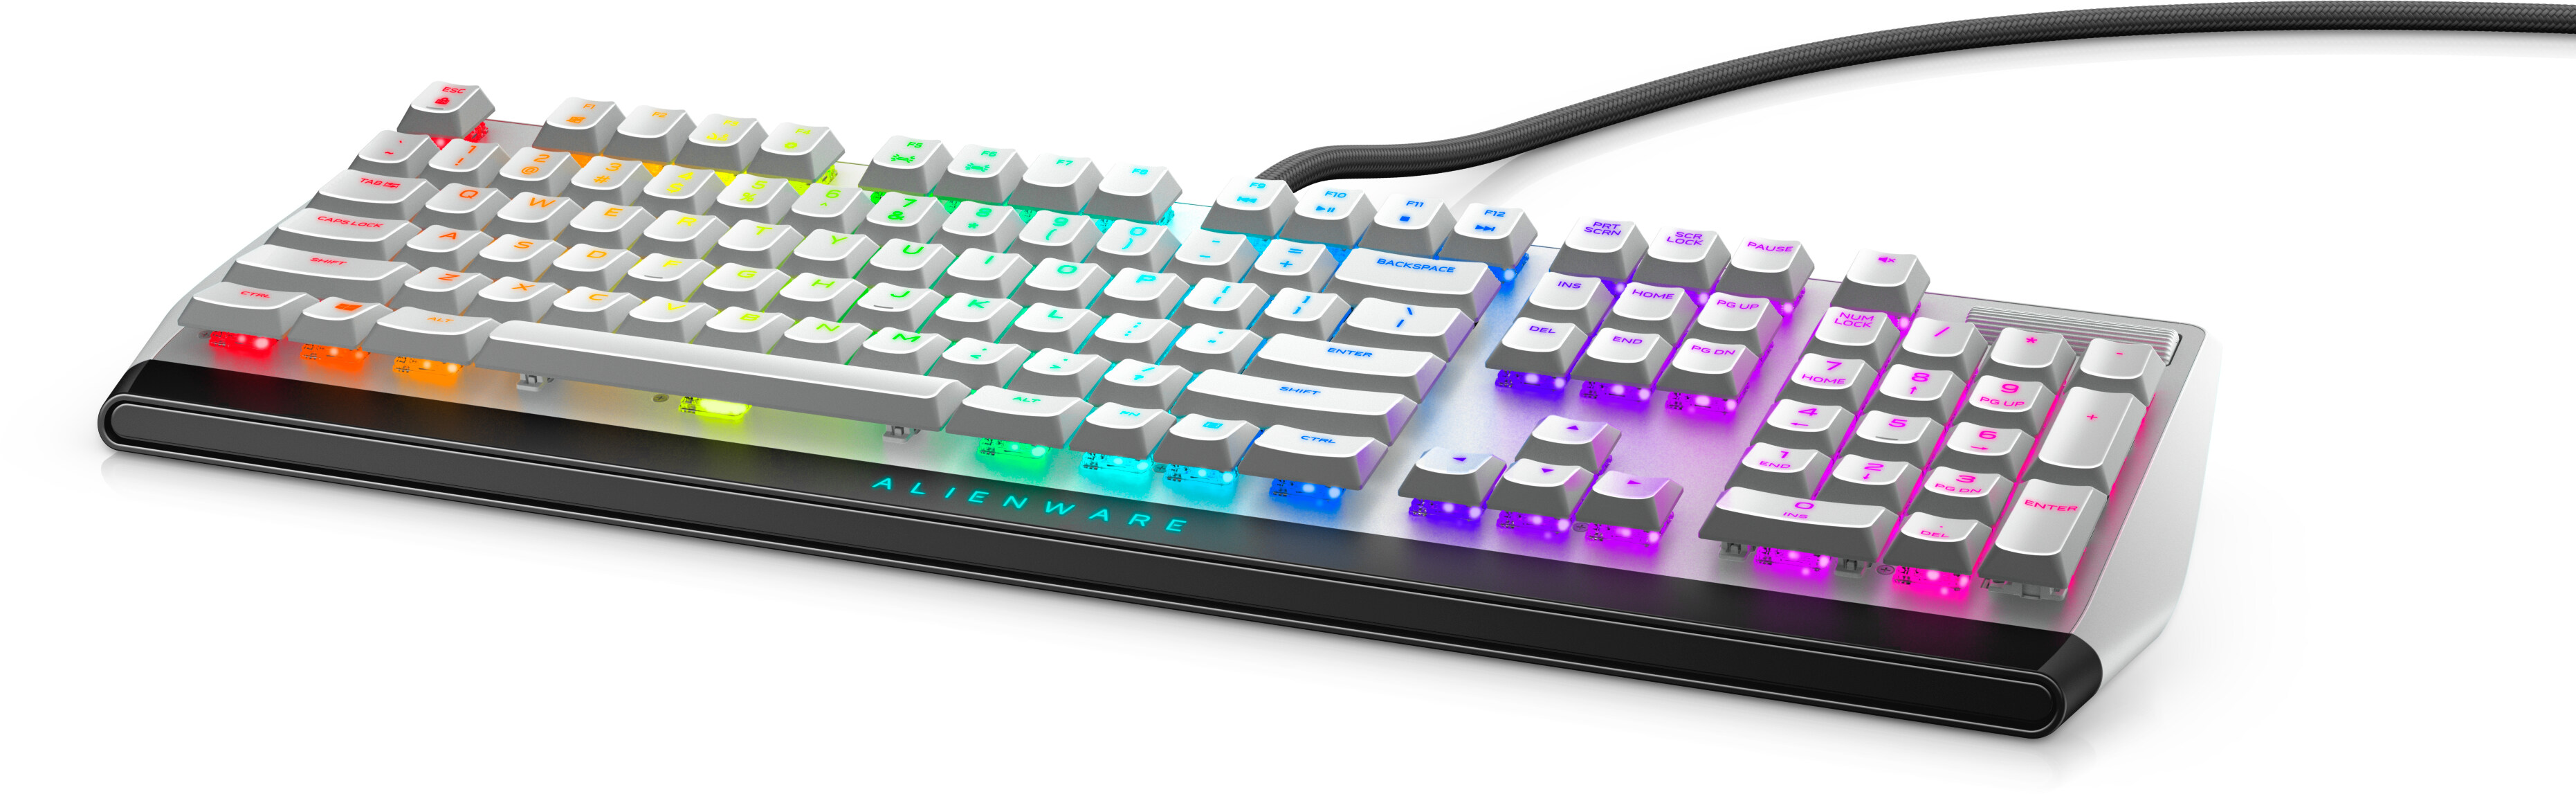 Alienware Low Profile RGB Mechanical Gaming Keyboard - AW510K - Lunar Light